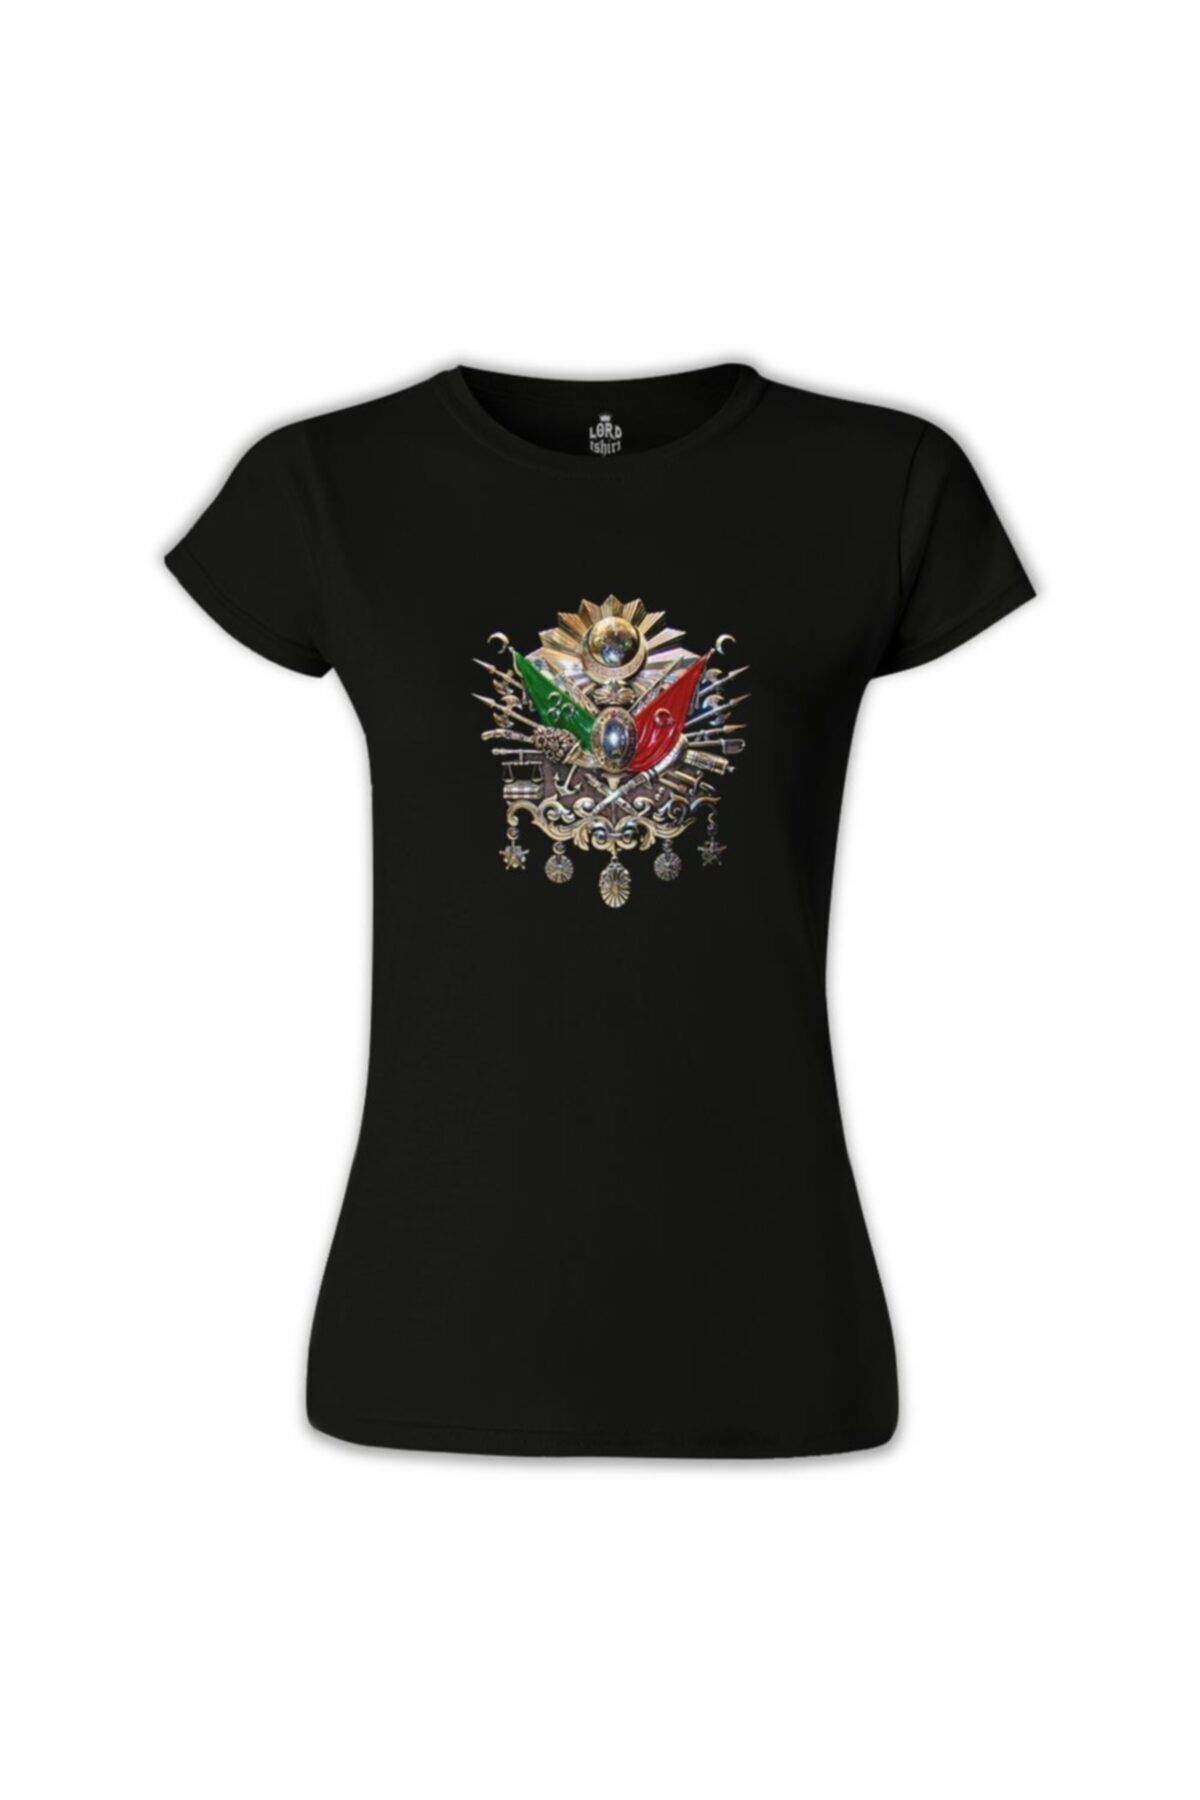 Lord T-Shirt Kadın Siyah Osmanlı Arması  Tshirt